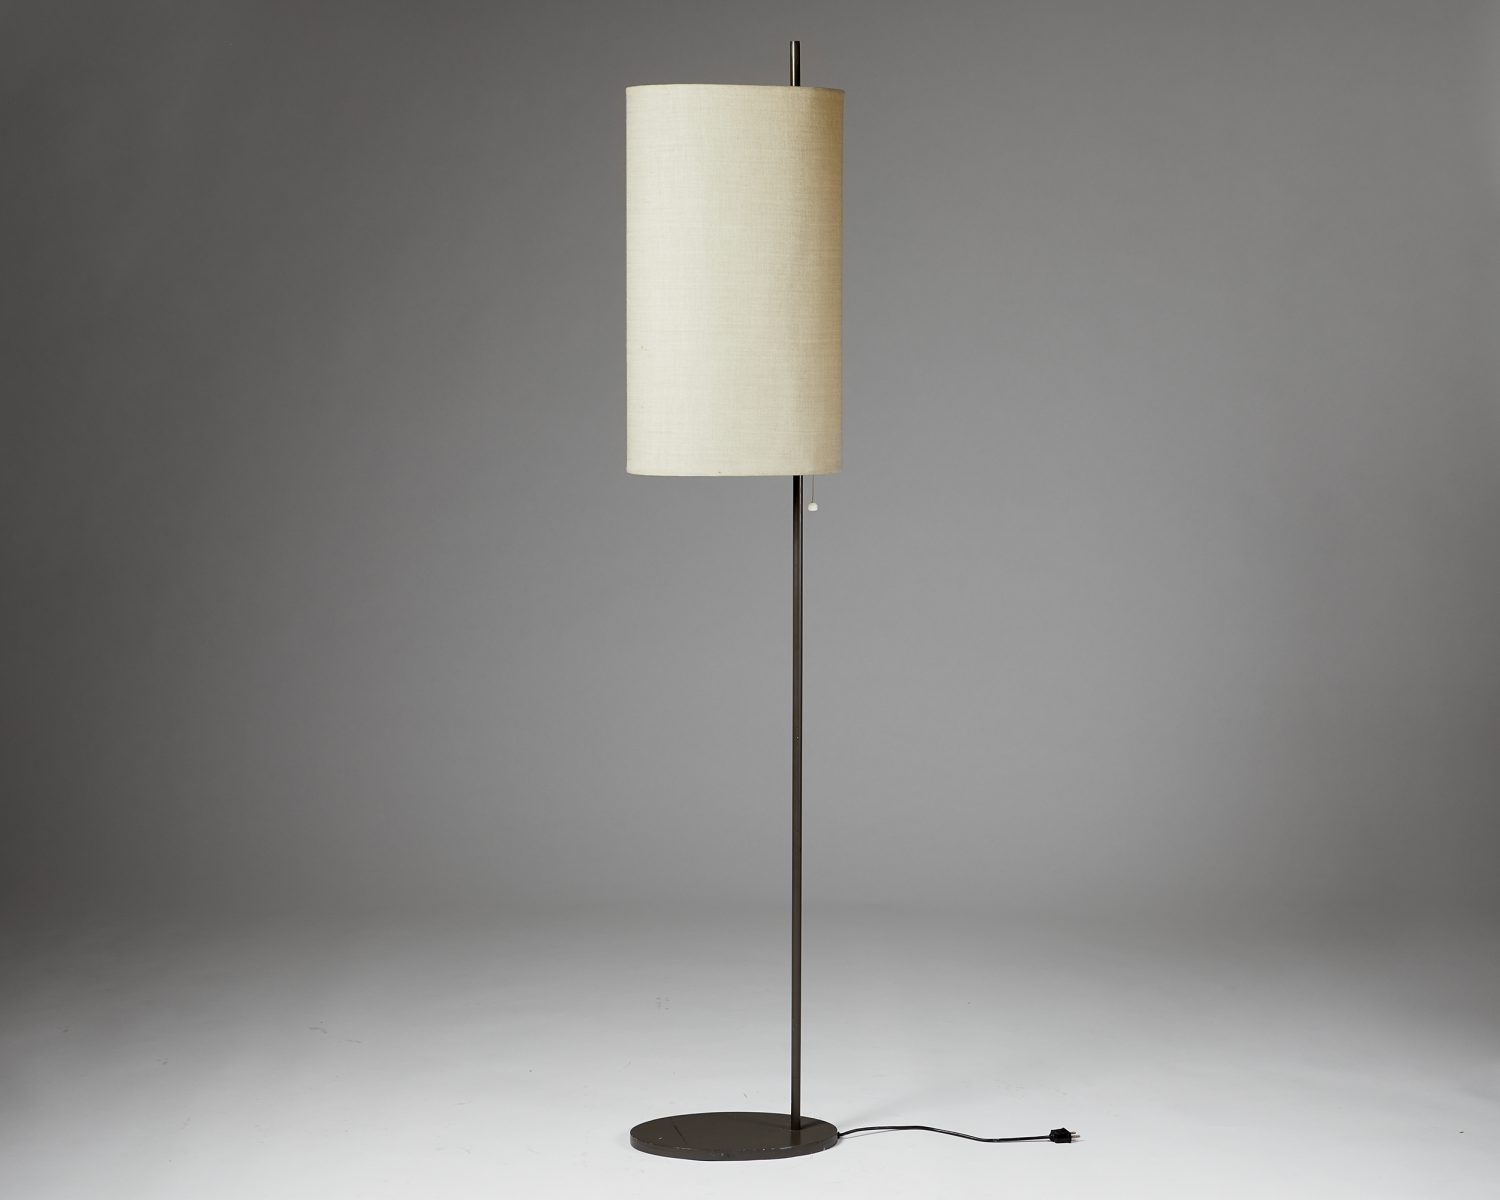 Frem Blæse camouflage Floor Lamp Model AJ Royal, designed by Arne Jacobsen, — Modernity